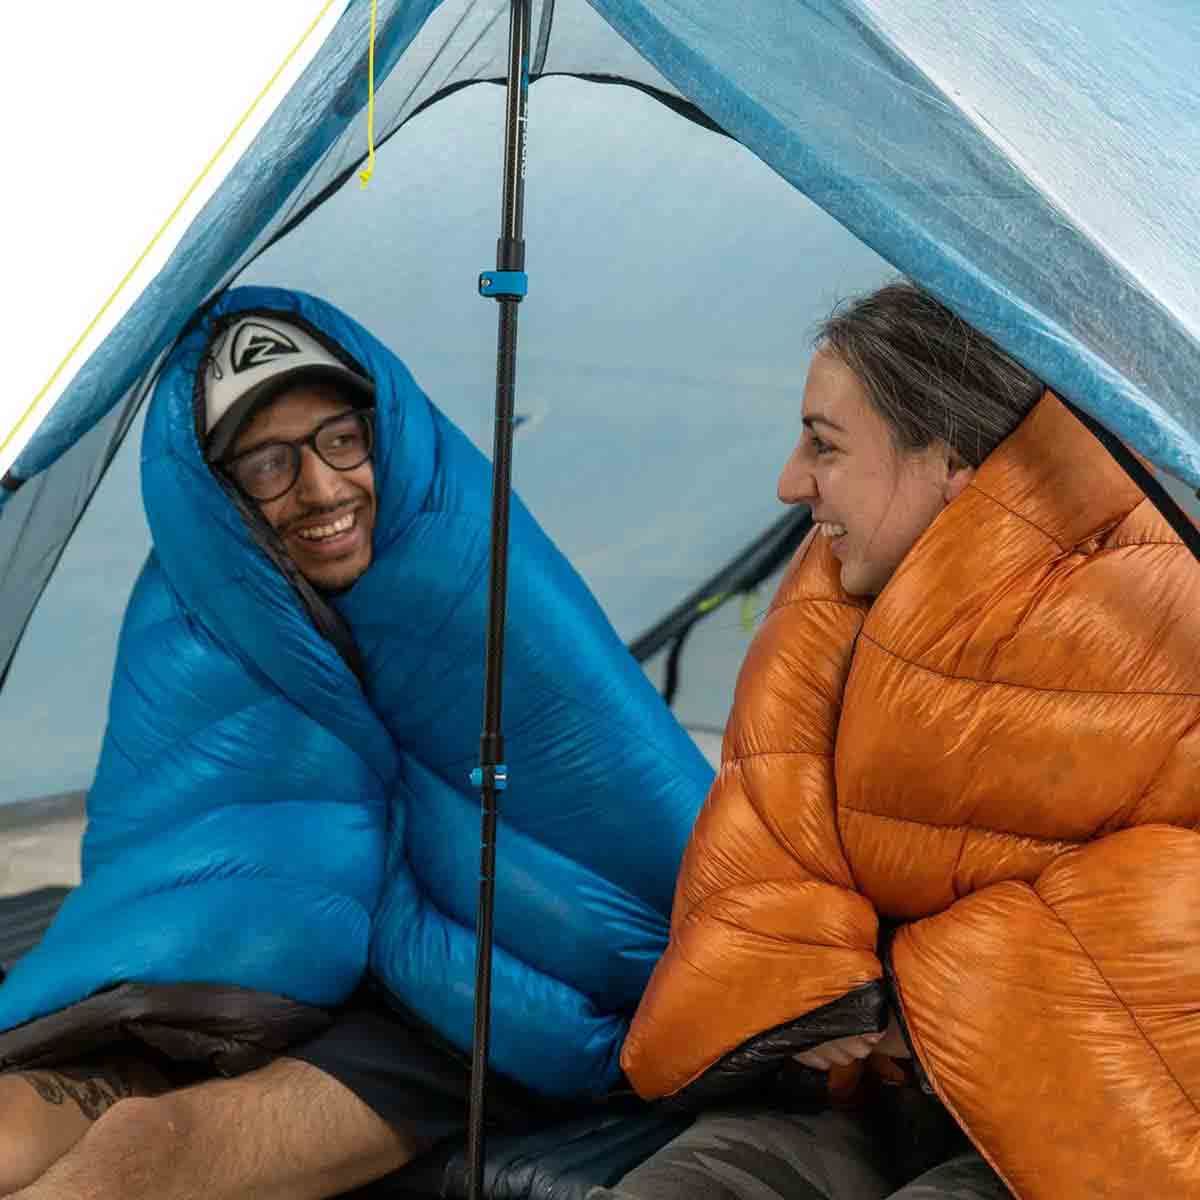 Zpacks Duplex Zip backpacking tent - 2 people